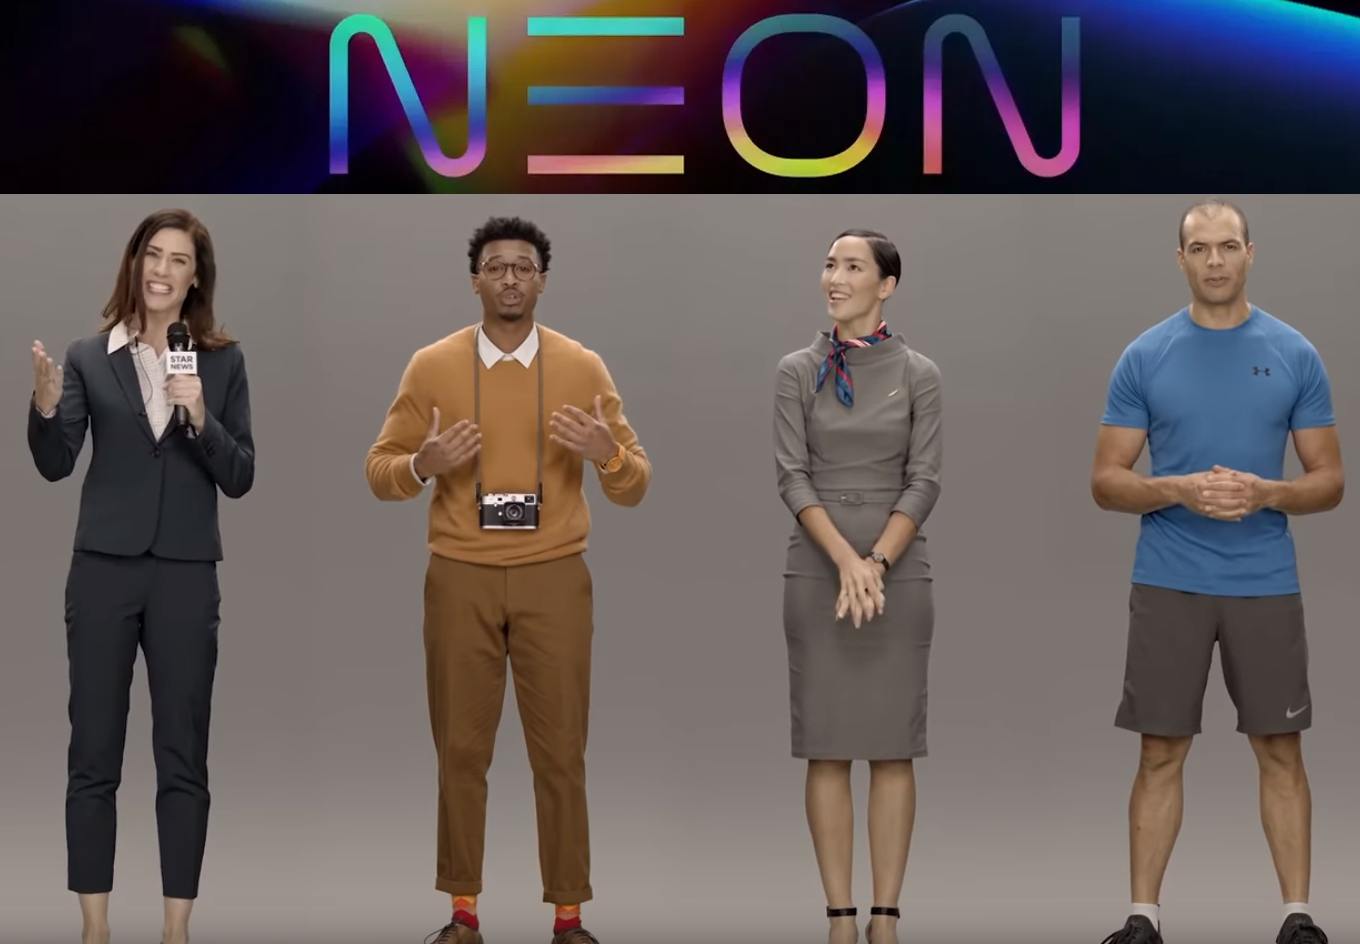 Tajemniczy projekt Samsung Neon okazał się „sztucznym człowiekiem”